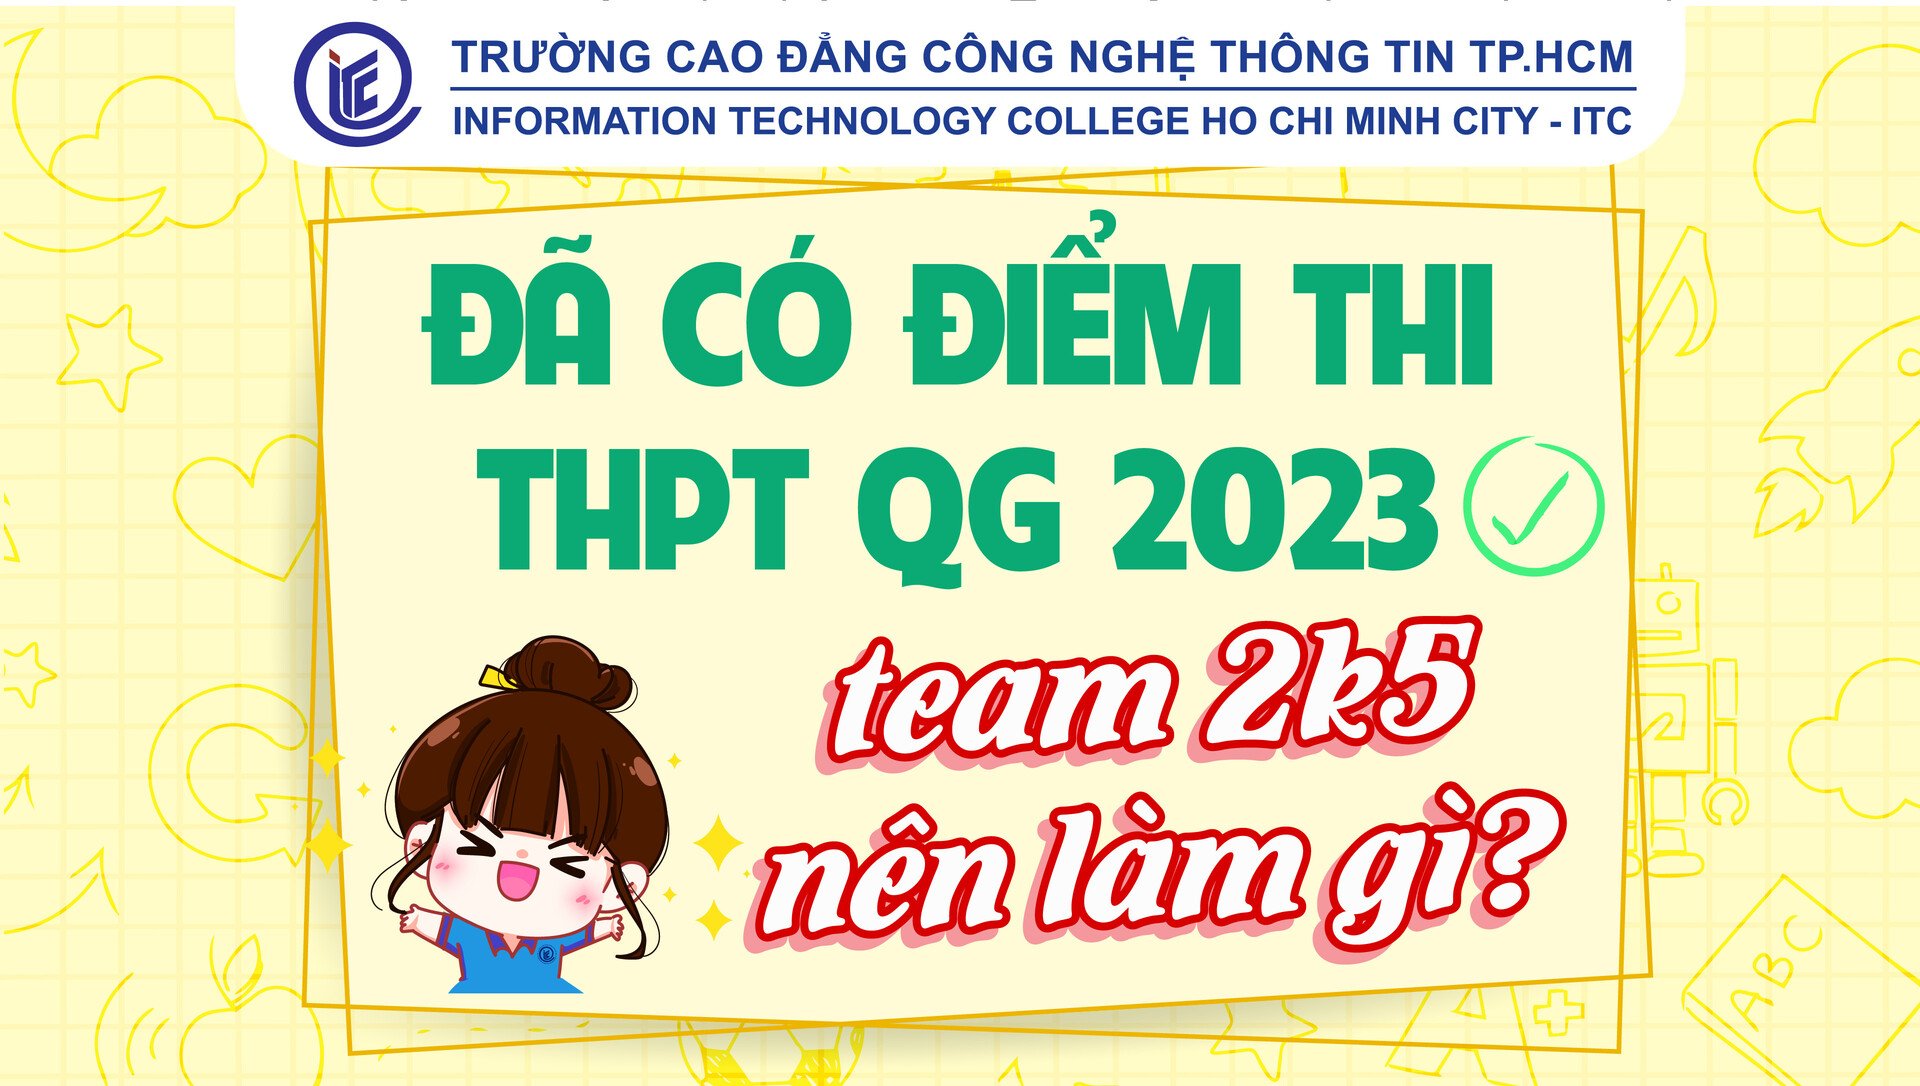 Đã có điểm thi THPT QG 2023, team 2k5 nên làm gì?